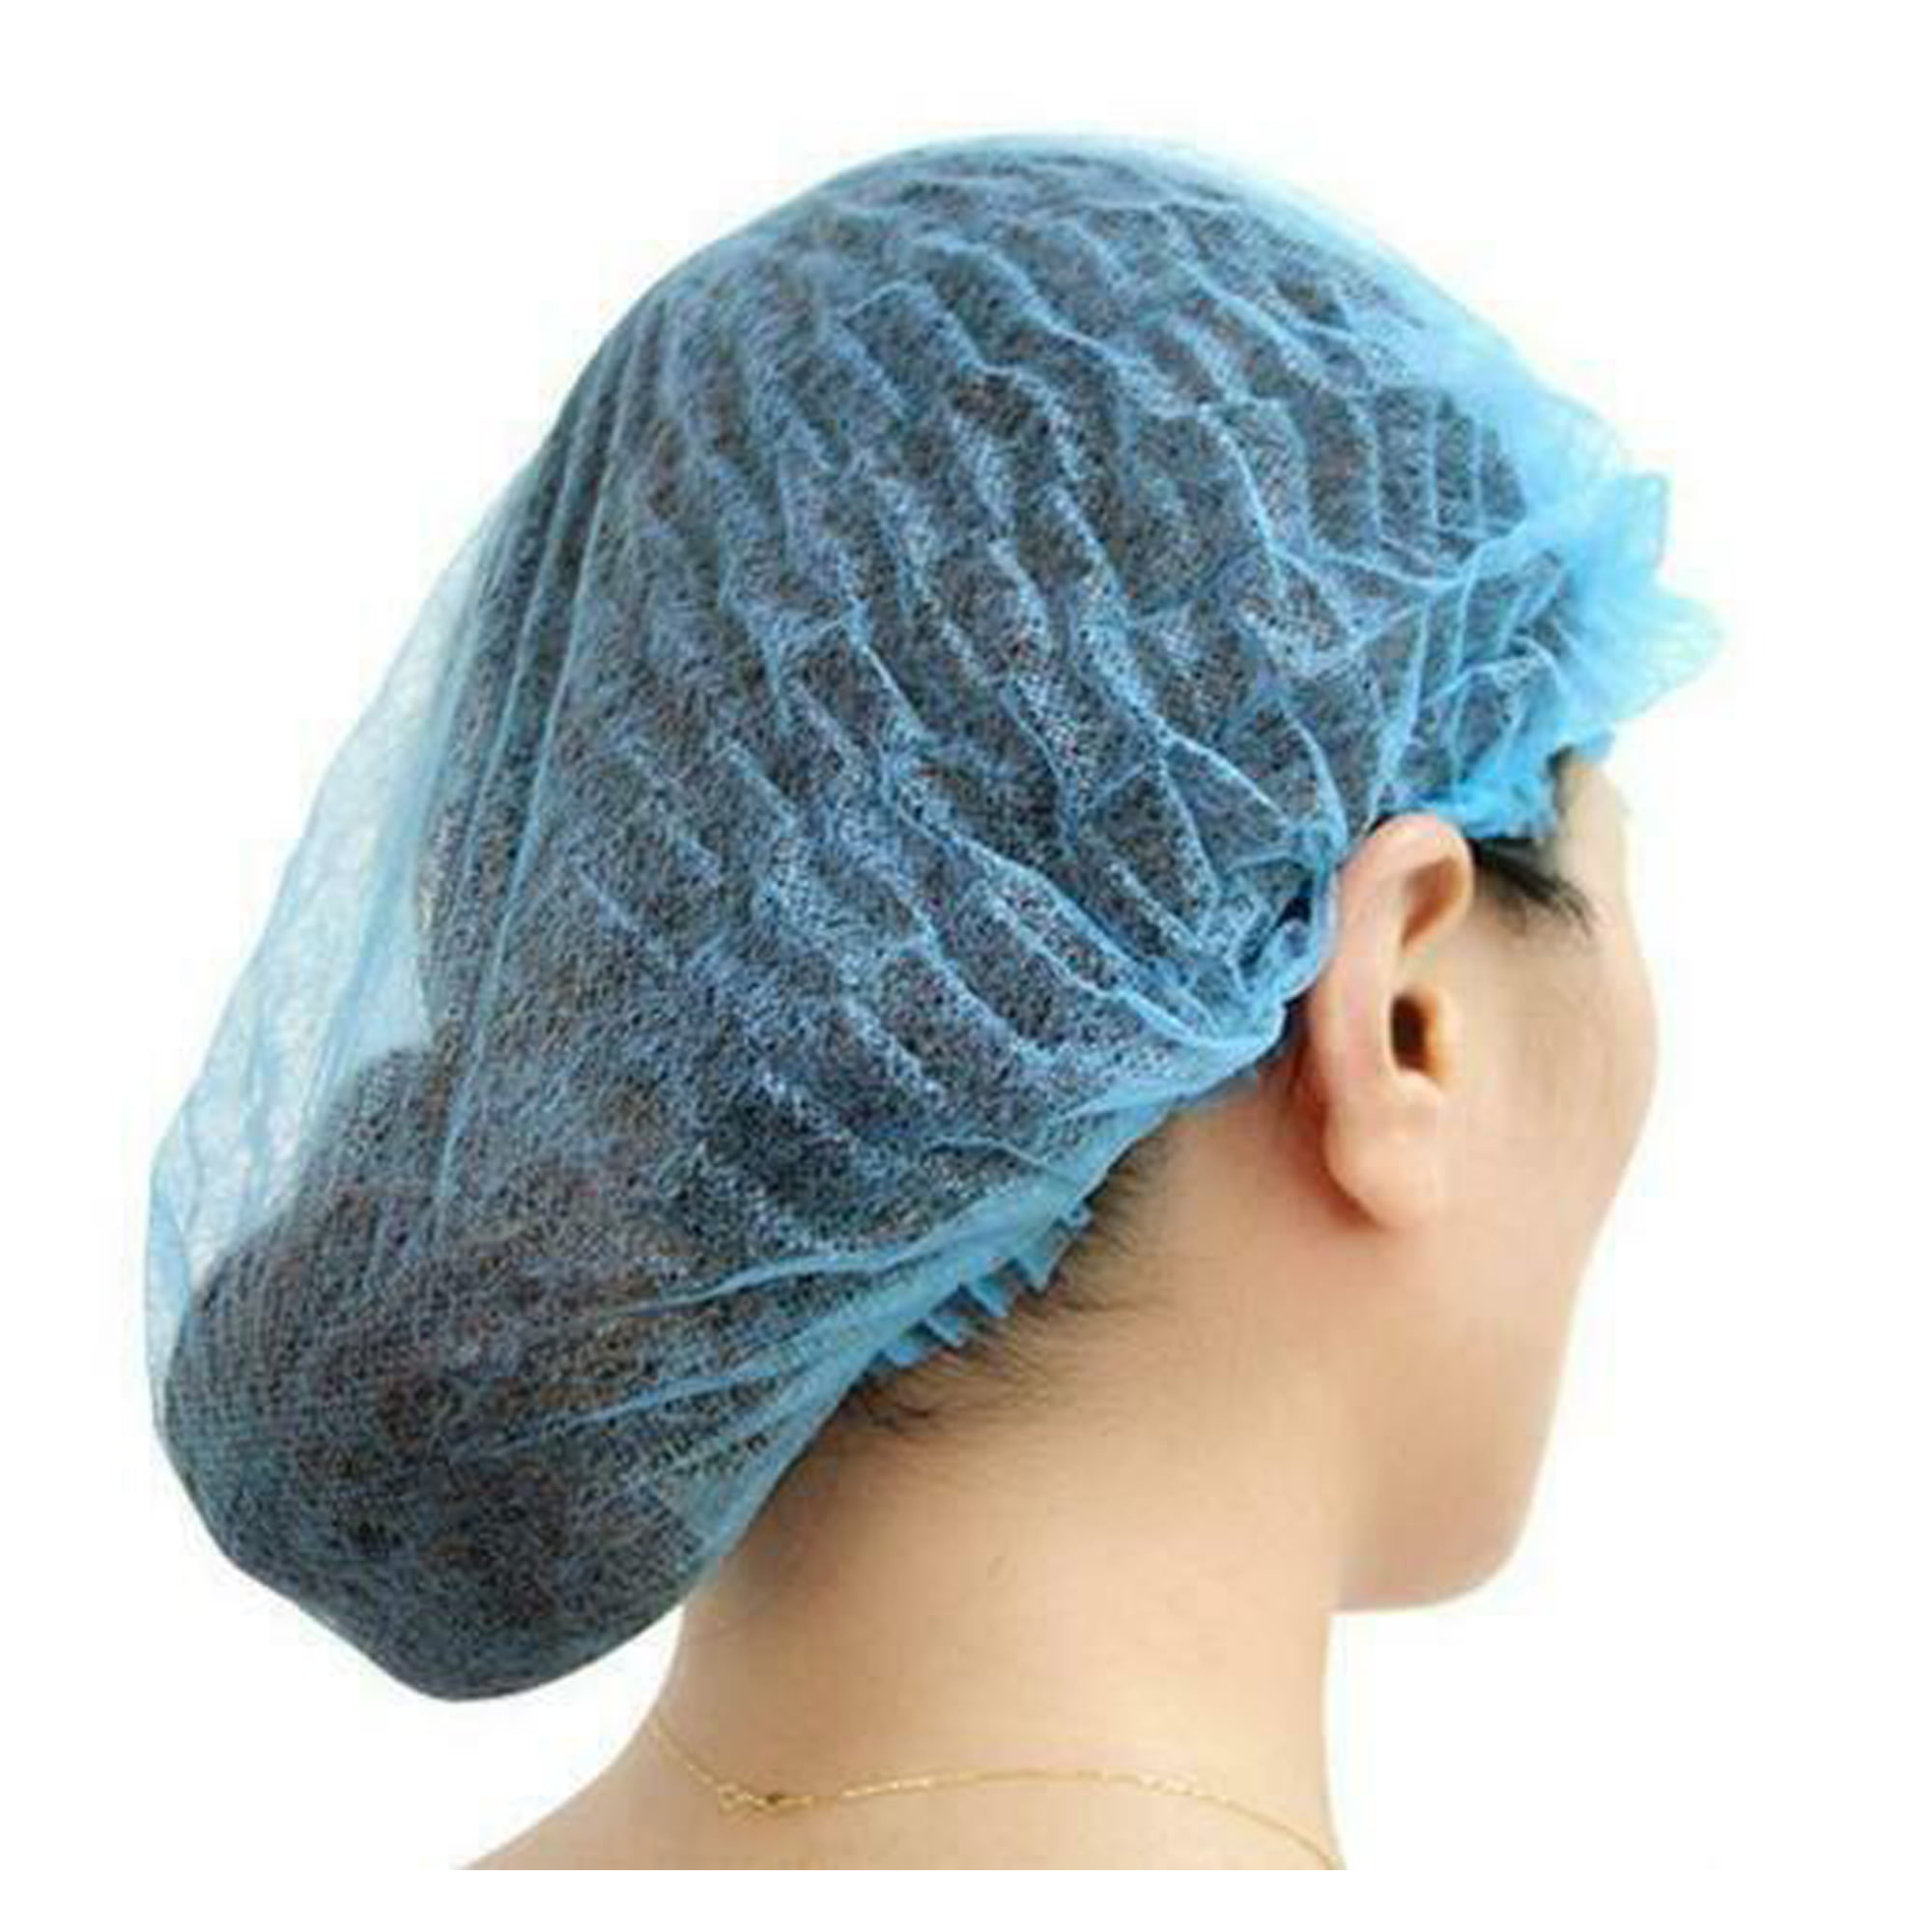 Details about   100pcs Disposable Hair Net Bouffant Cap Non Woven Stretch Dust Cap Head Cover 